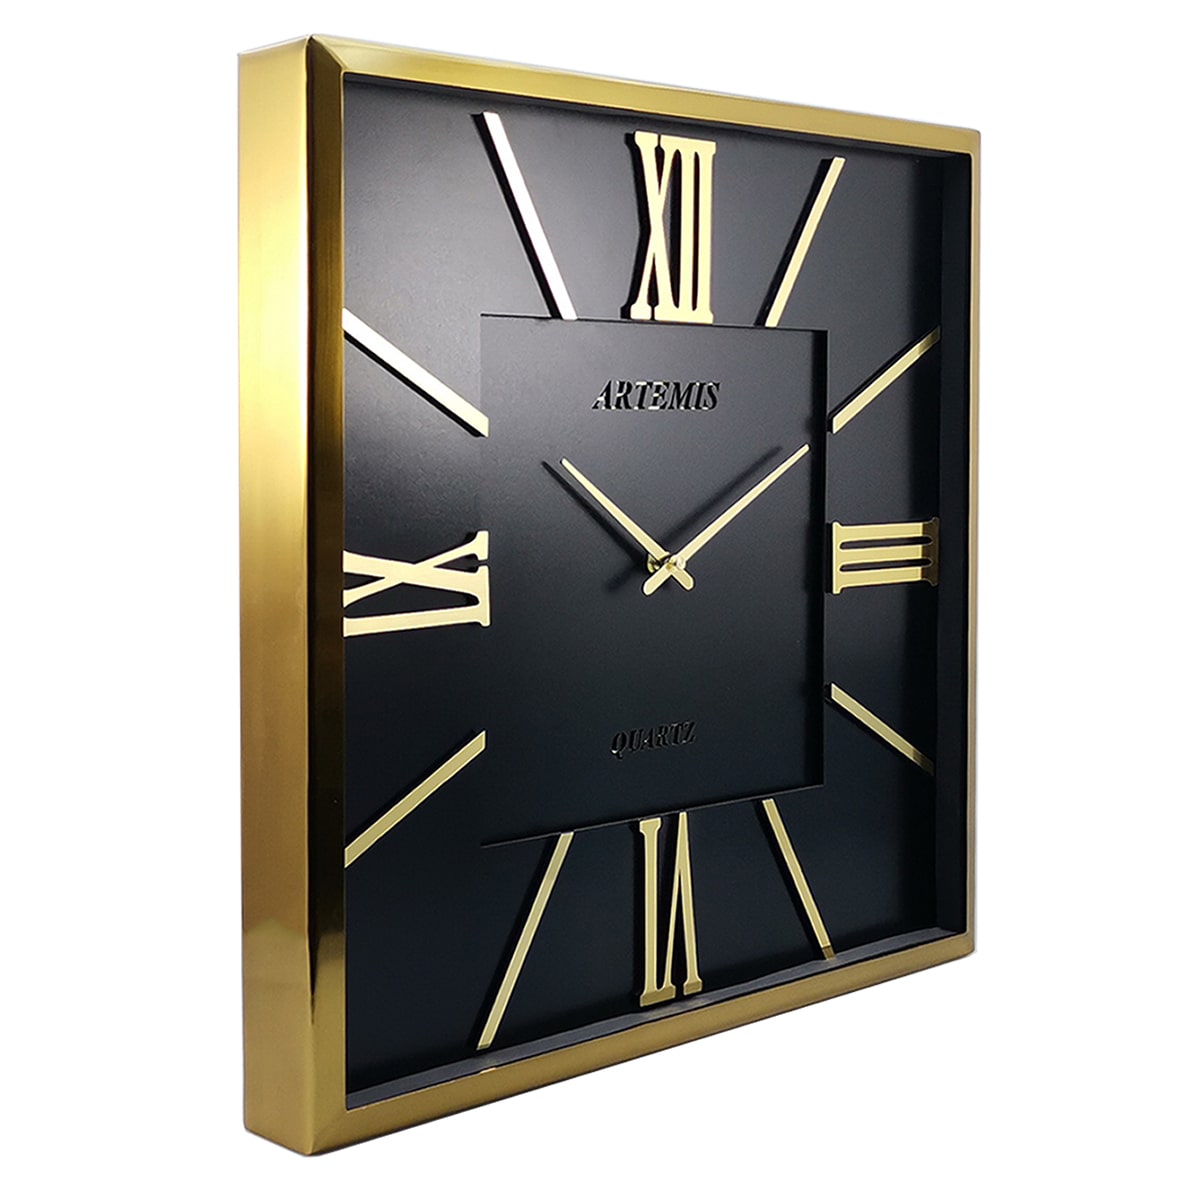 ساعت دیواری آرتمیس مدل 2026 گلد (طلایی) صفحه مشکی0